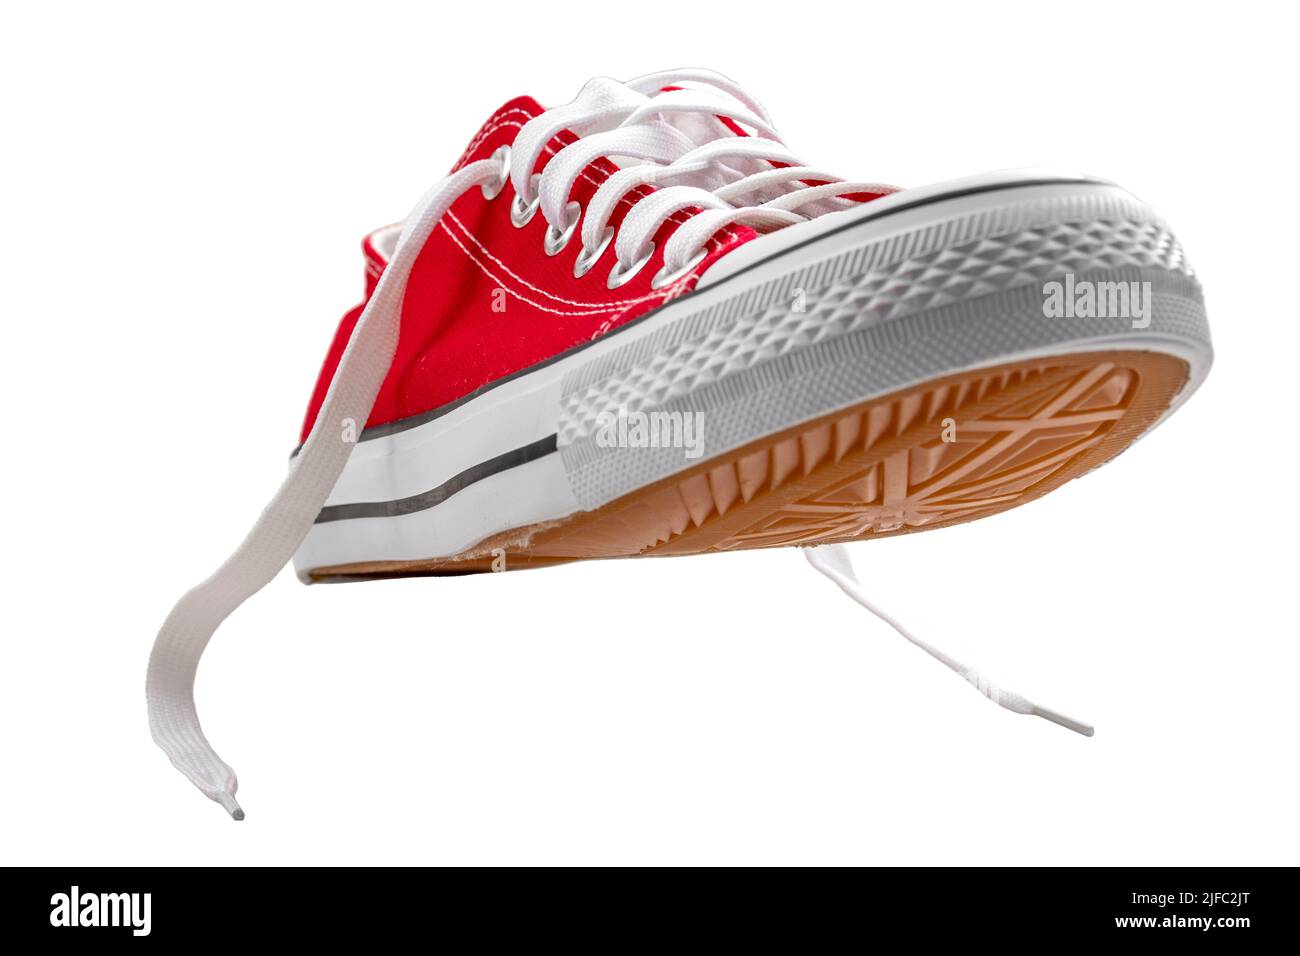 Scarpe sportive in tela rossa vintage con lacci, adatte per giocare a basket, tennis o running, isolate su bianco con ritaglio percorso conc Foto Stock